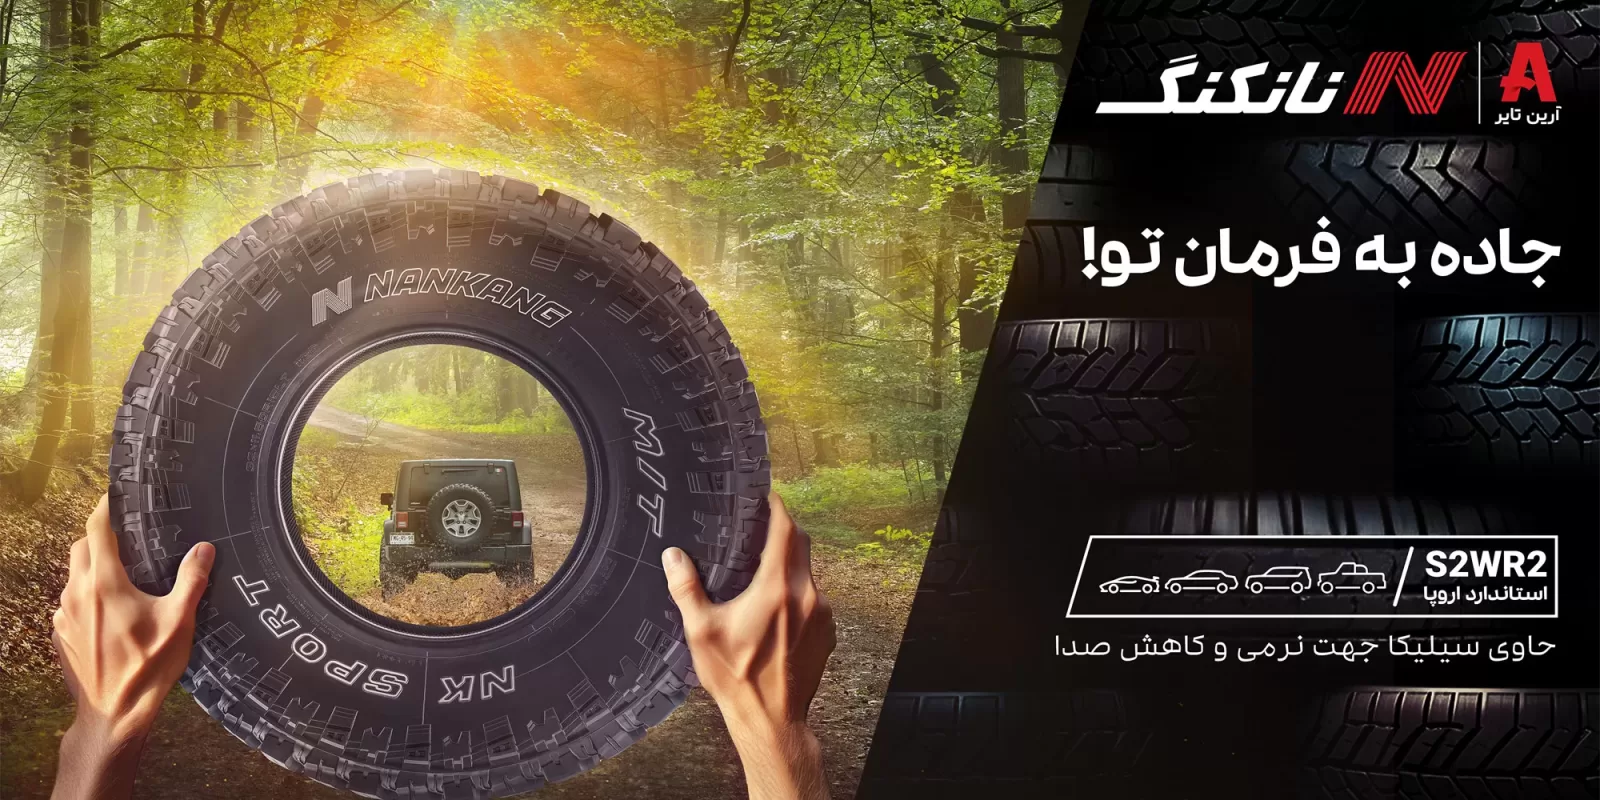 تبلیغات محیطی در استان مازندران